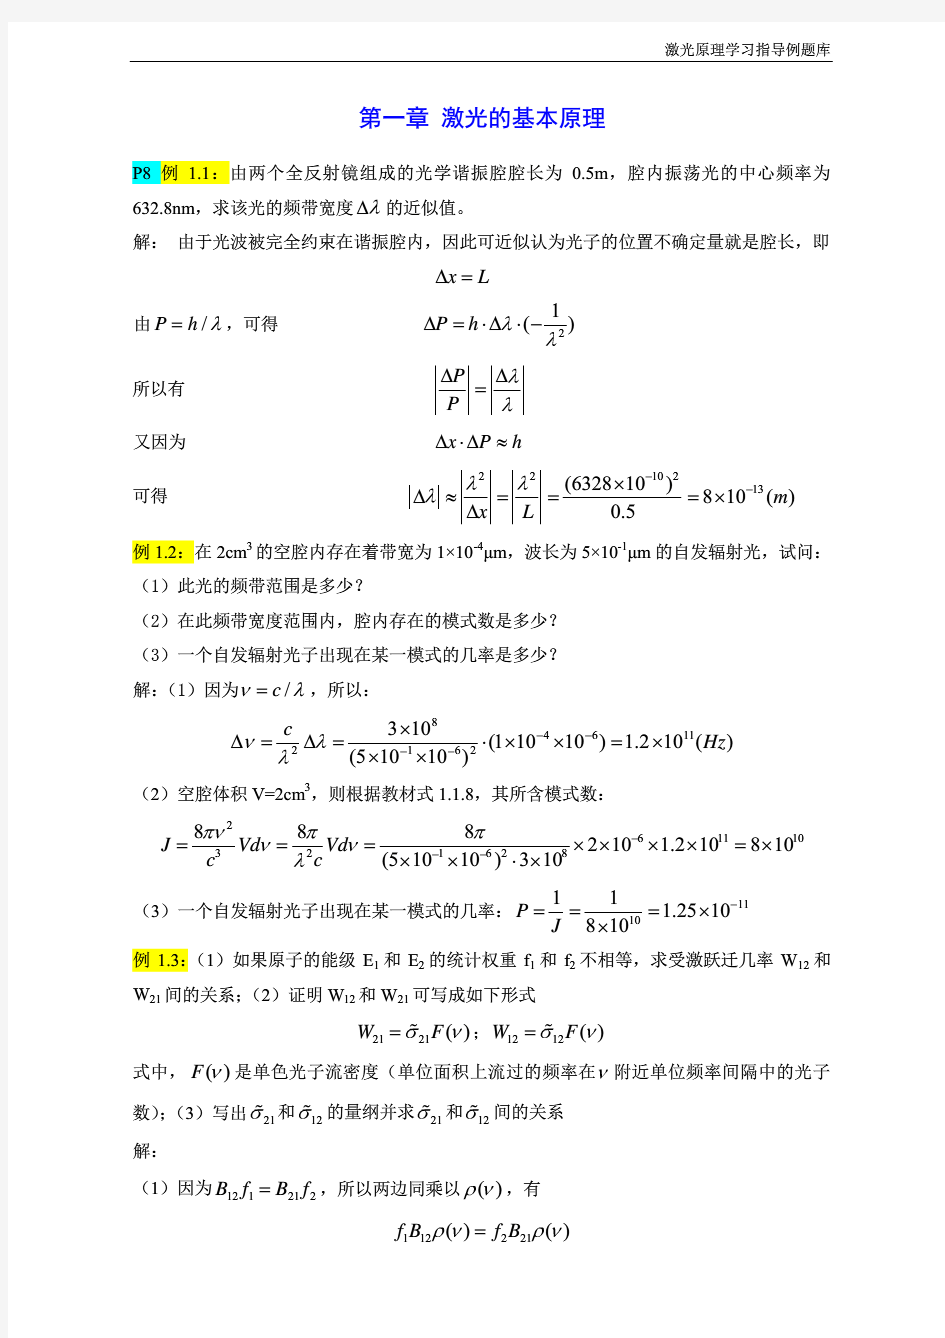 华中科技大学《激光原理》学习指导经典例题